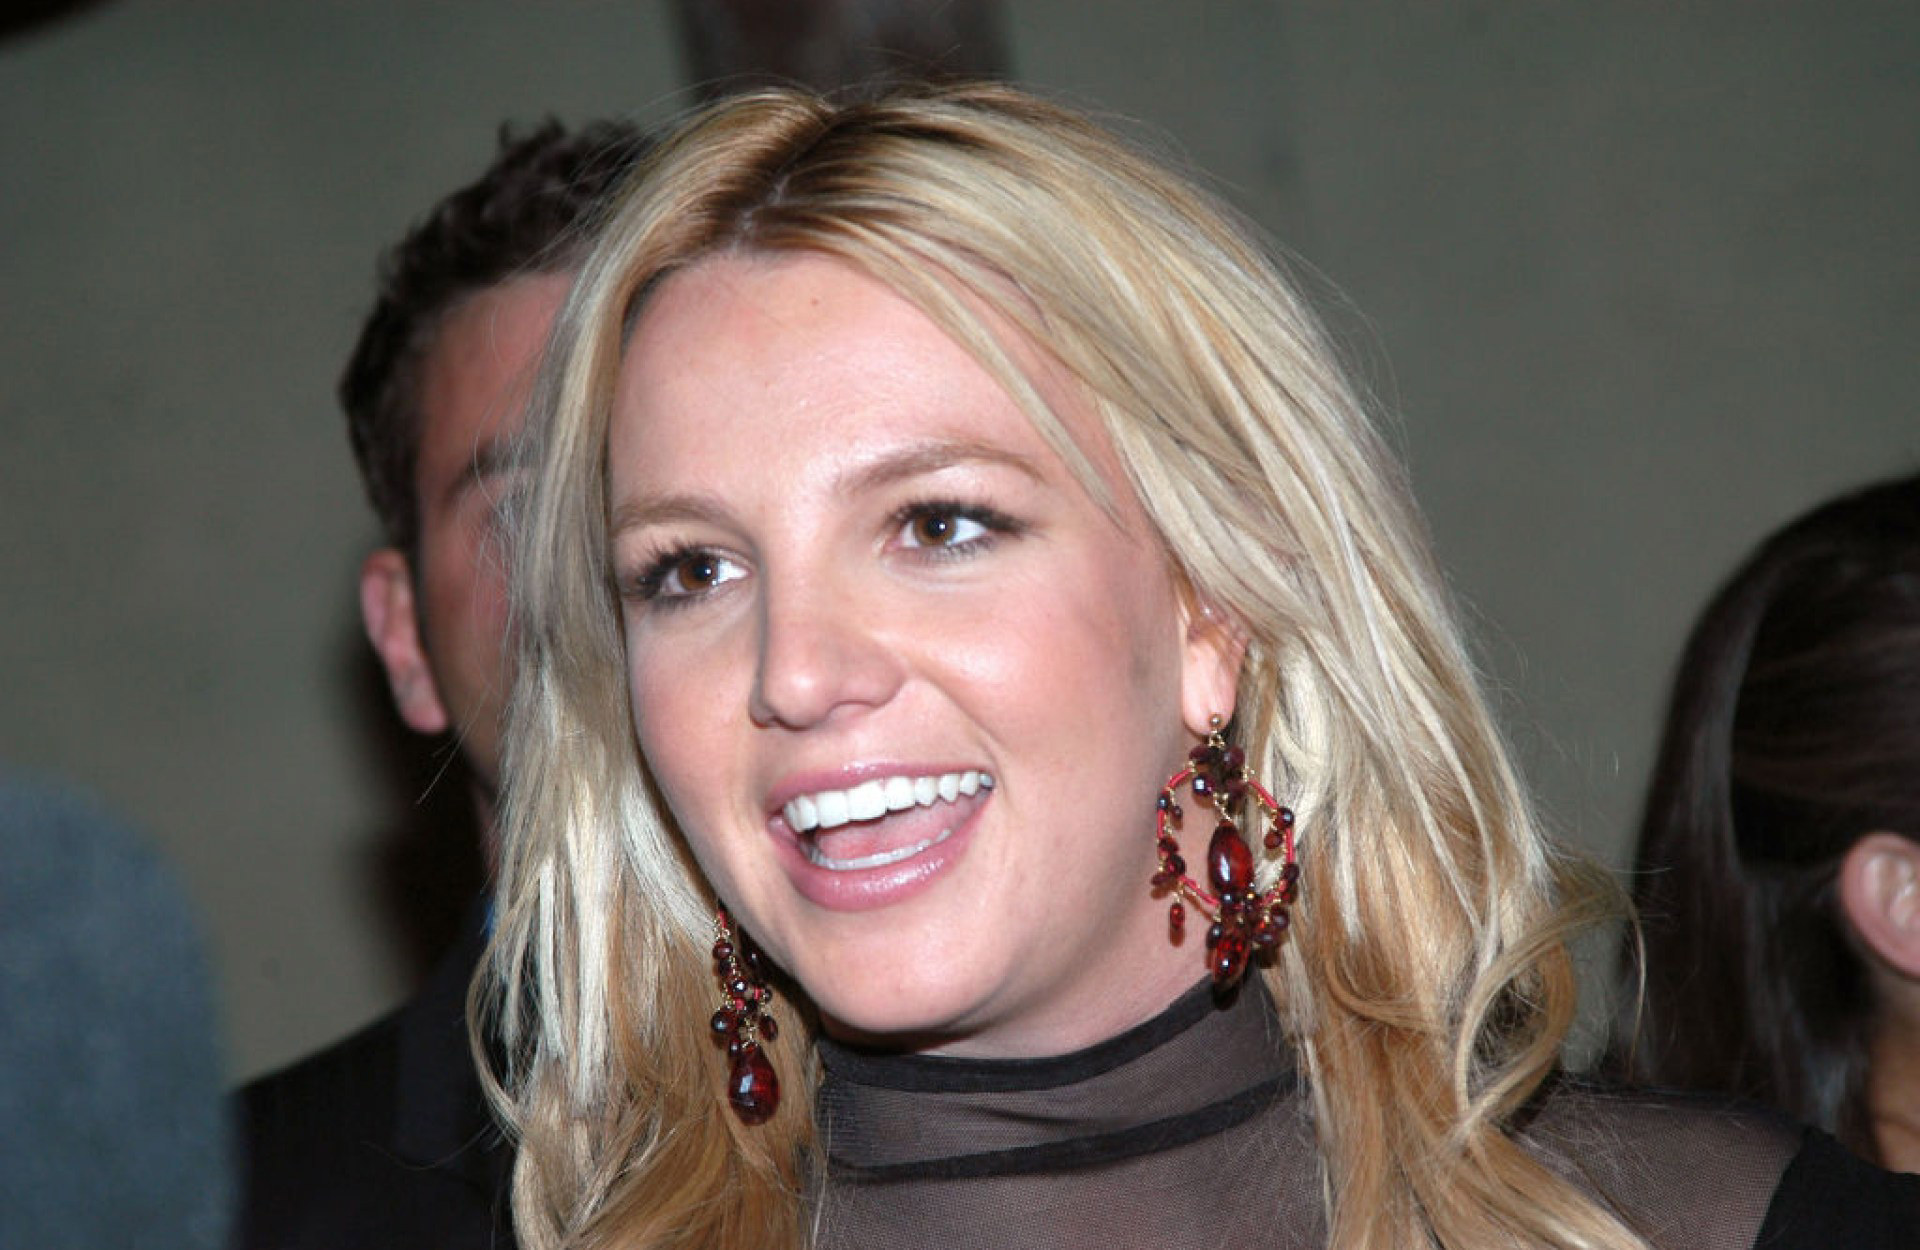 Britney Spears' The Woman in Me explosive memoir release - as it happened